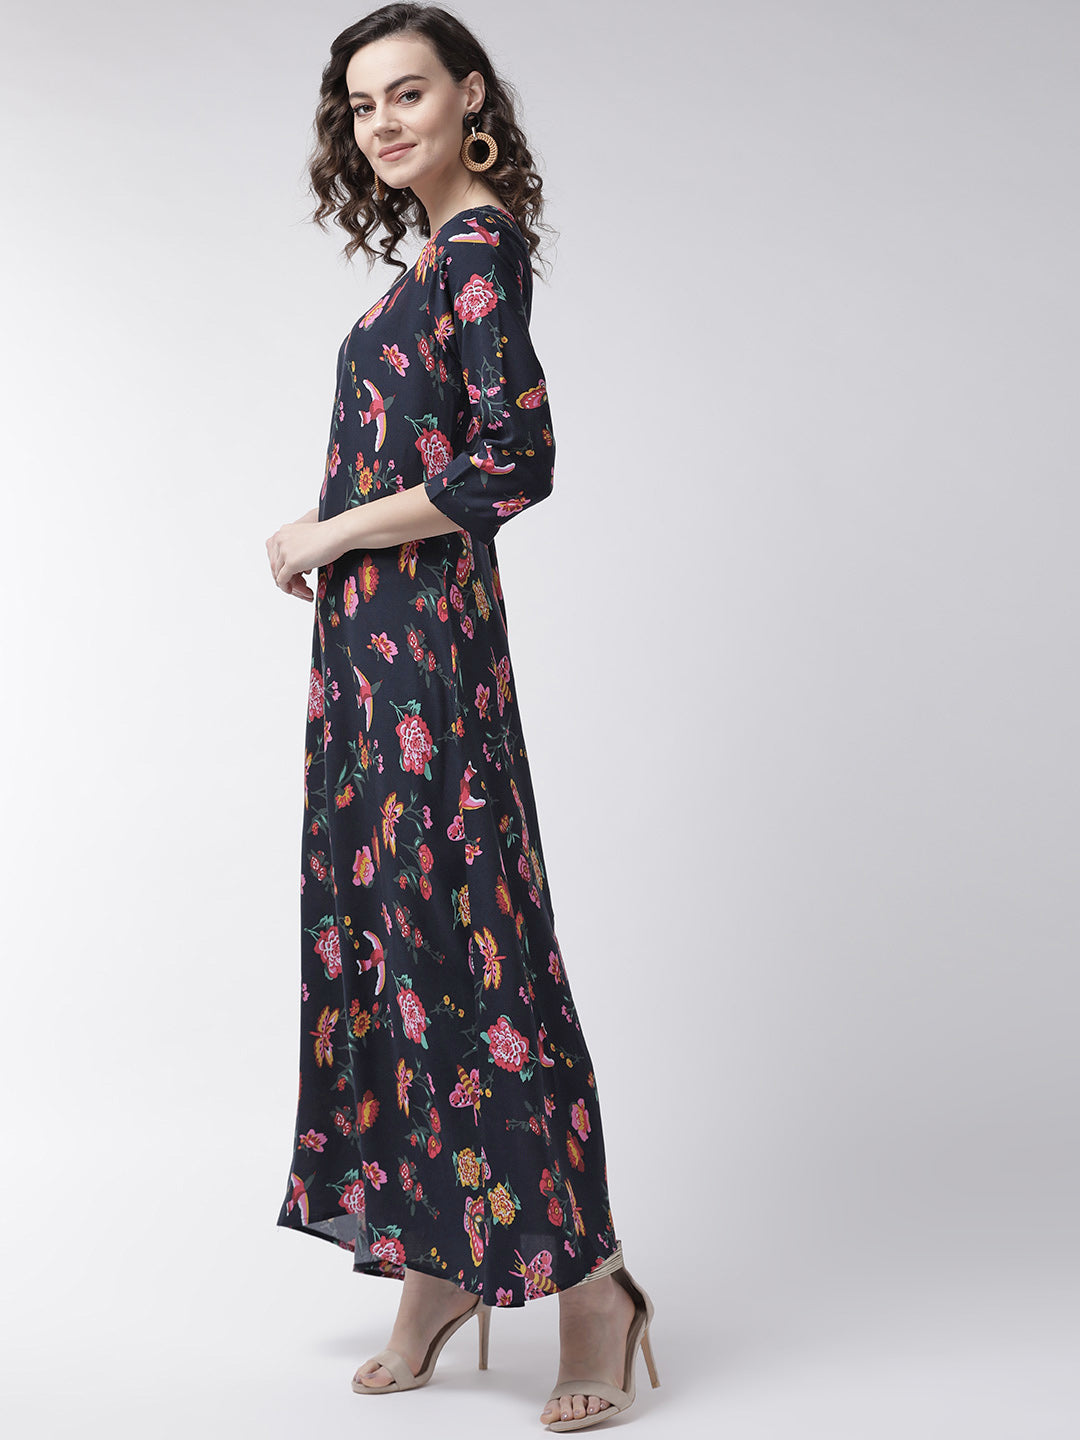 महिलाओं के लिए नेवी ब्लू और पिंक फ्लोरल प्रिंटेड मैक्सी ड्रेस